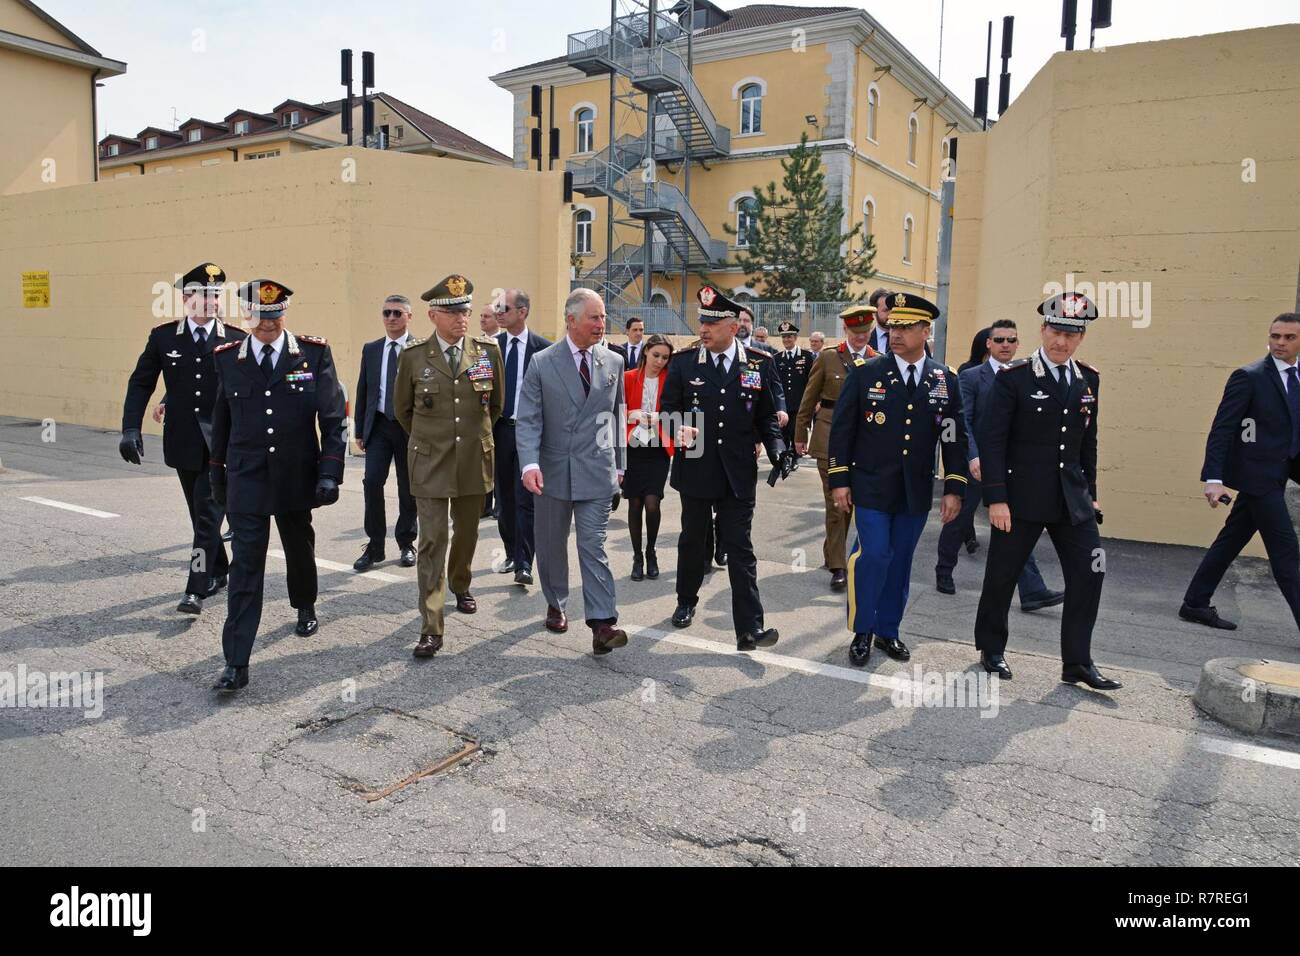 Son Altesse Royale, le Prince Charles, prince de Galles, pendant une visite au Centre d'excellence pour les unités de police de stabilité (COESPU) Vicenza, Italie, le 1 avril 2017. Banque D'Images